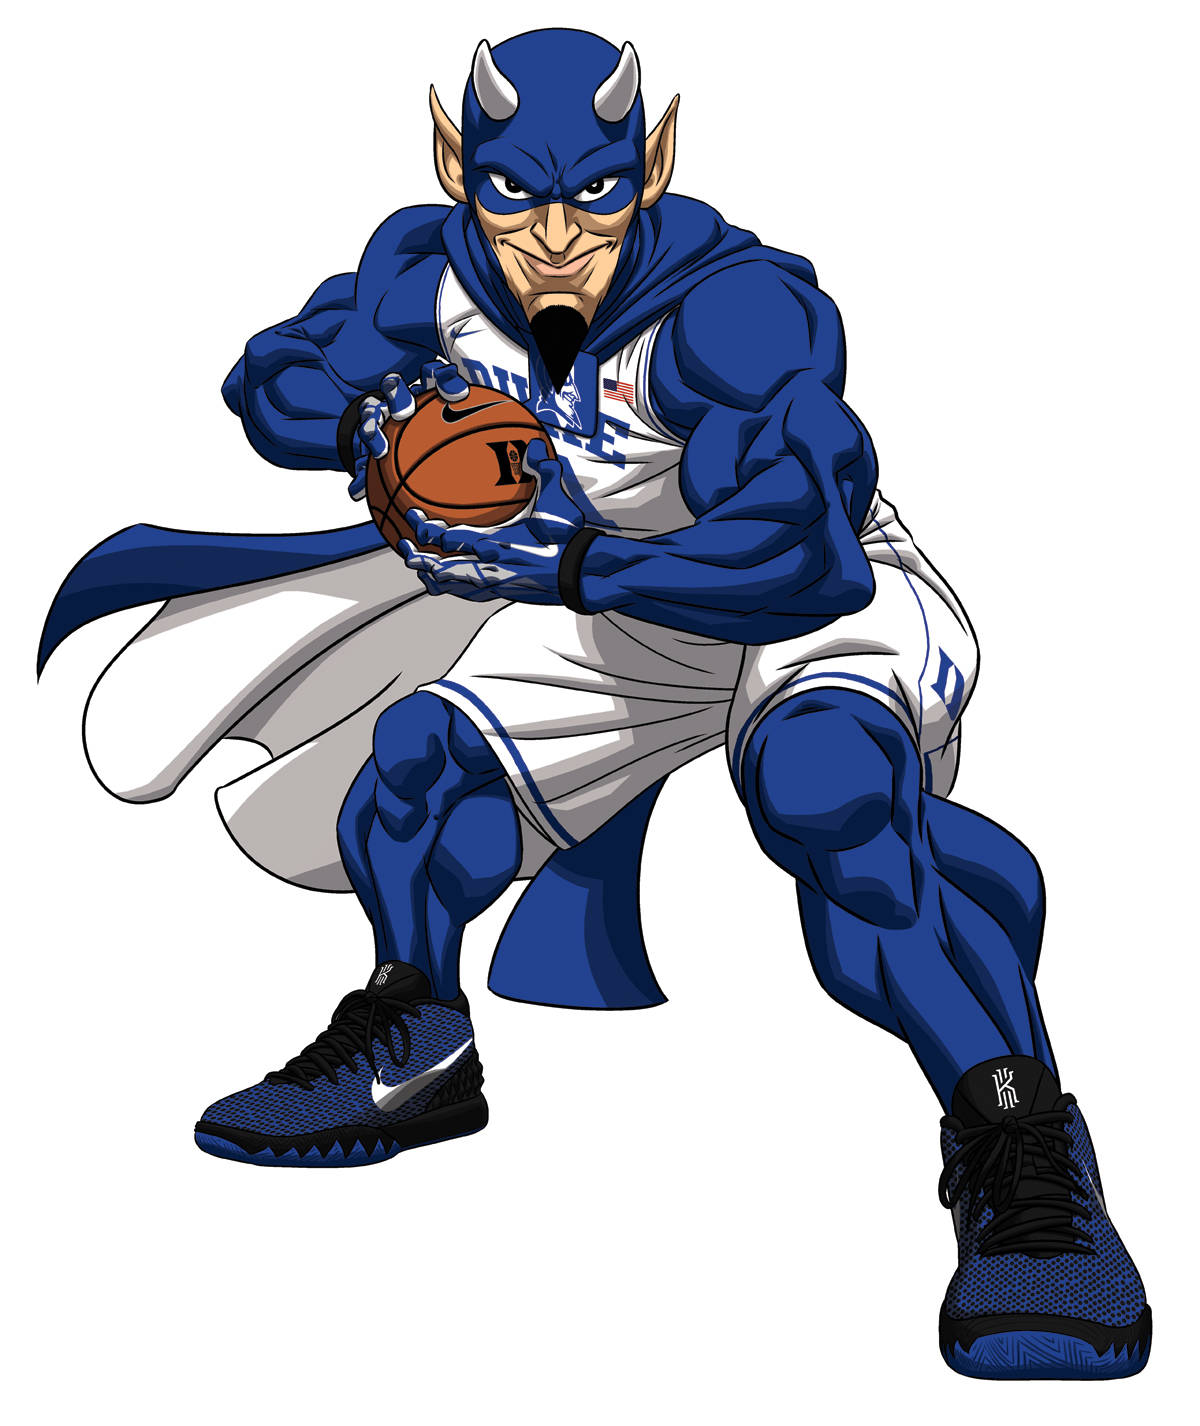 Duke Blue Devils Basketball Character Wallpaper